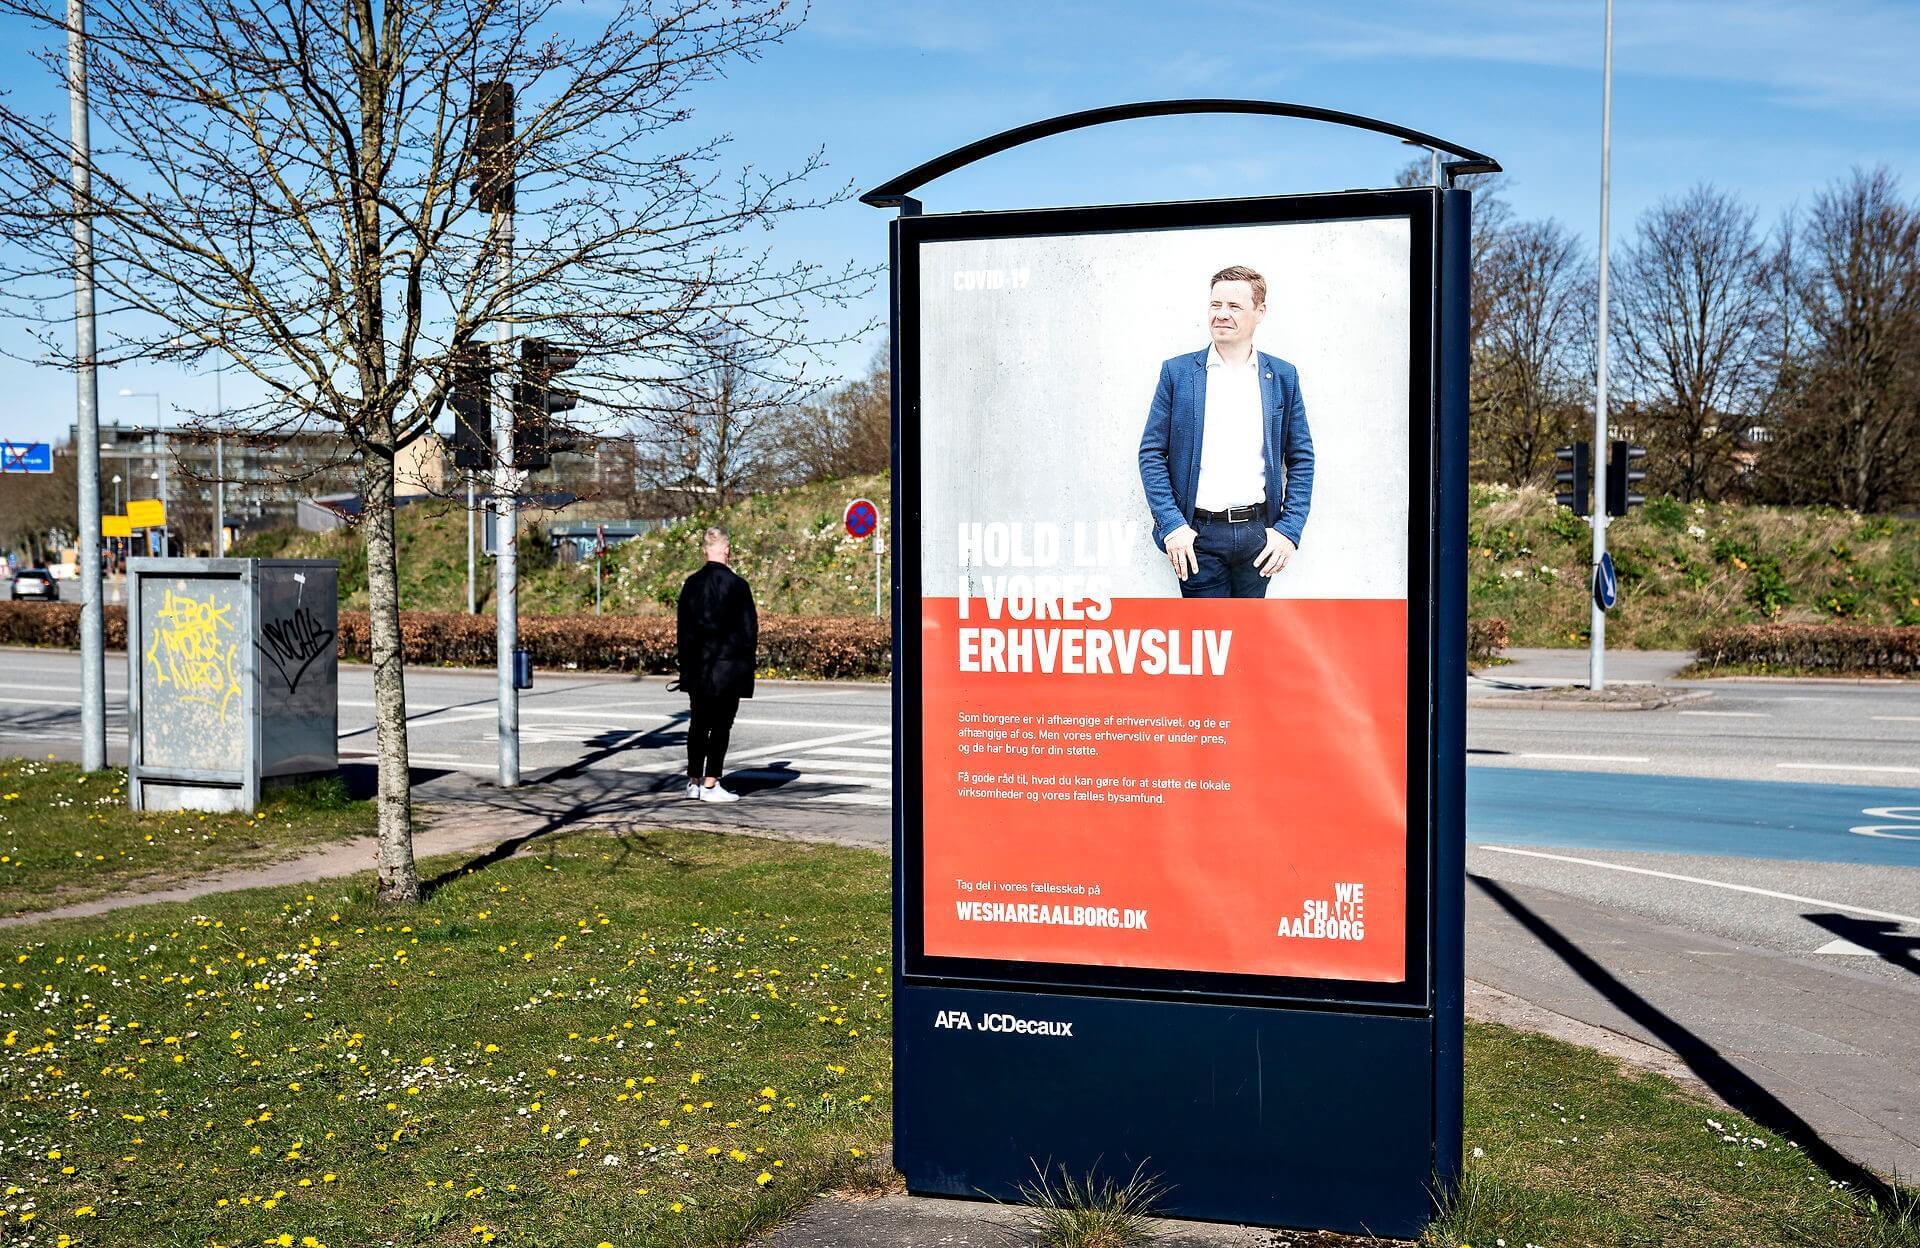 Plakat med Aalborgs borgmester Thomas Kastrup-Larsen (S) med overskriften: Hold liv i vores erhvervsliv. Plakaten lignede til forveksling en valgplakat for borgmesteren, og det gav anledning til en del kritik. 